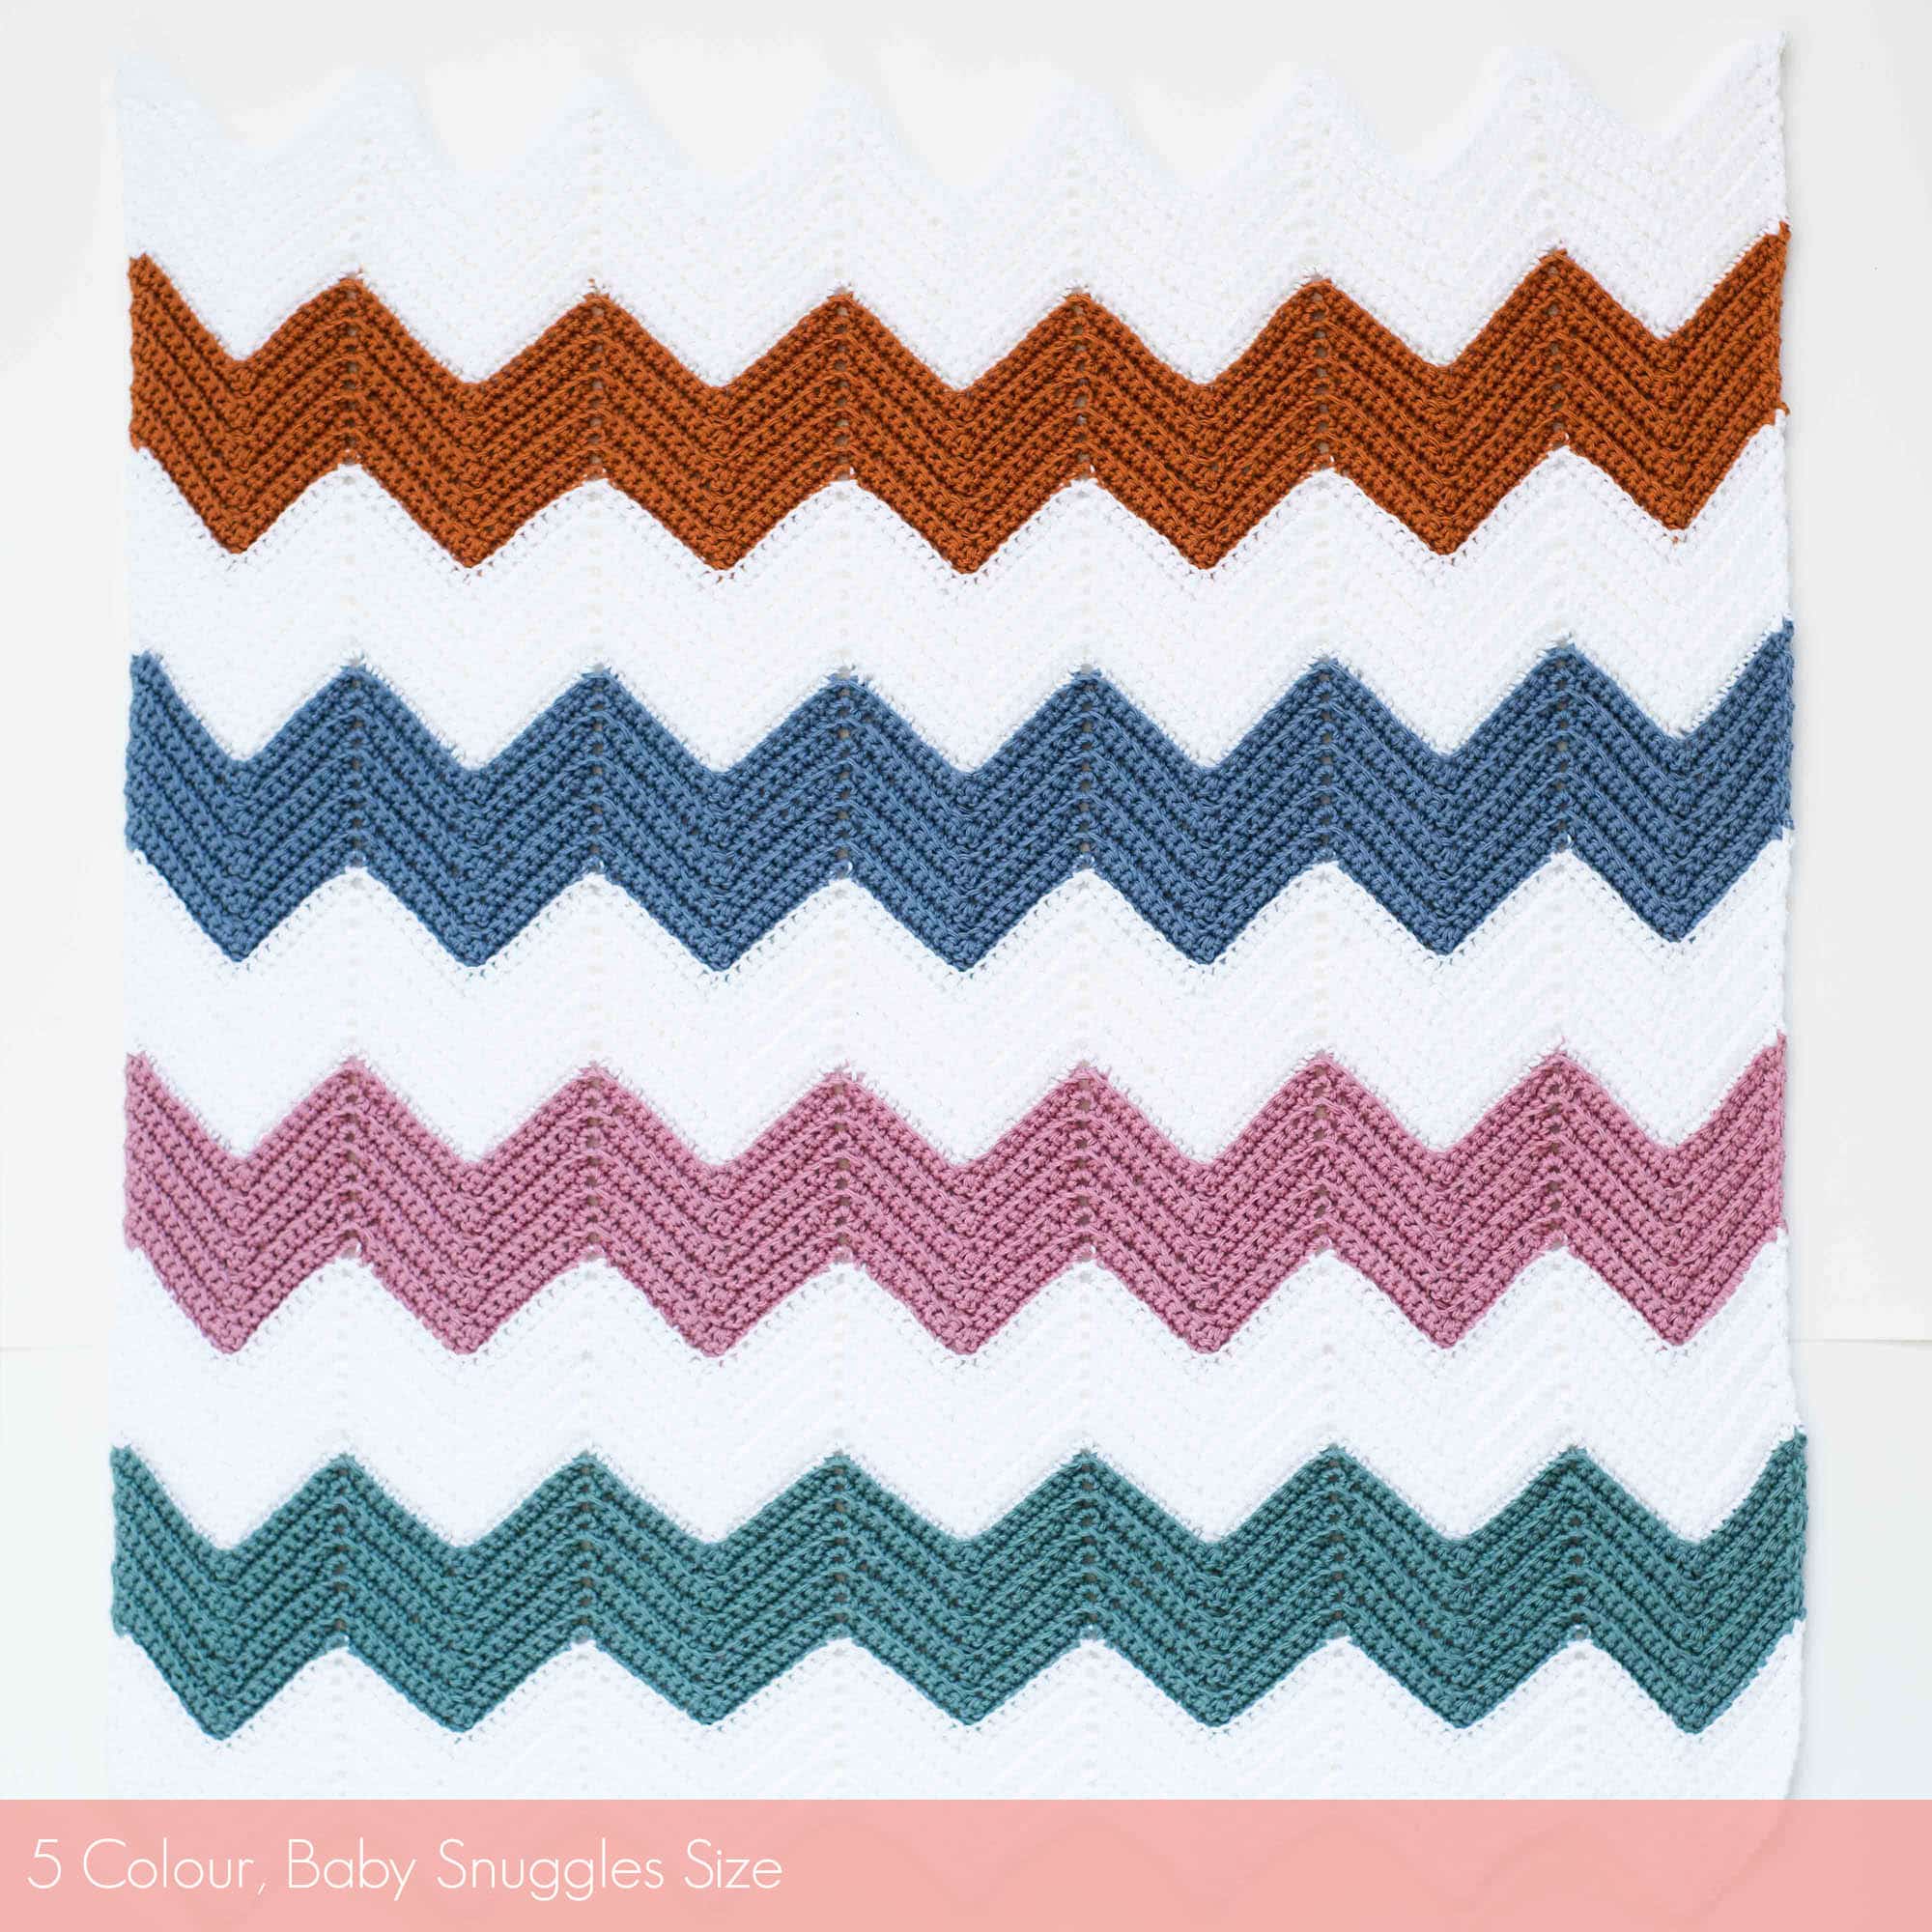 Calm Chevron Blanket 5 Colour | Homelea Lass contemporary crochet